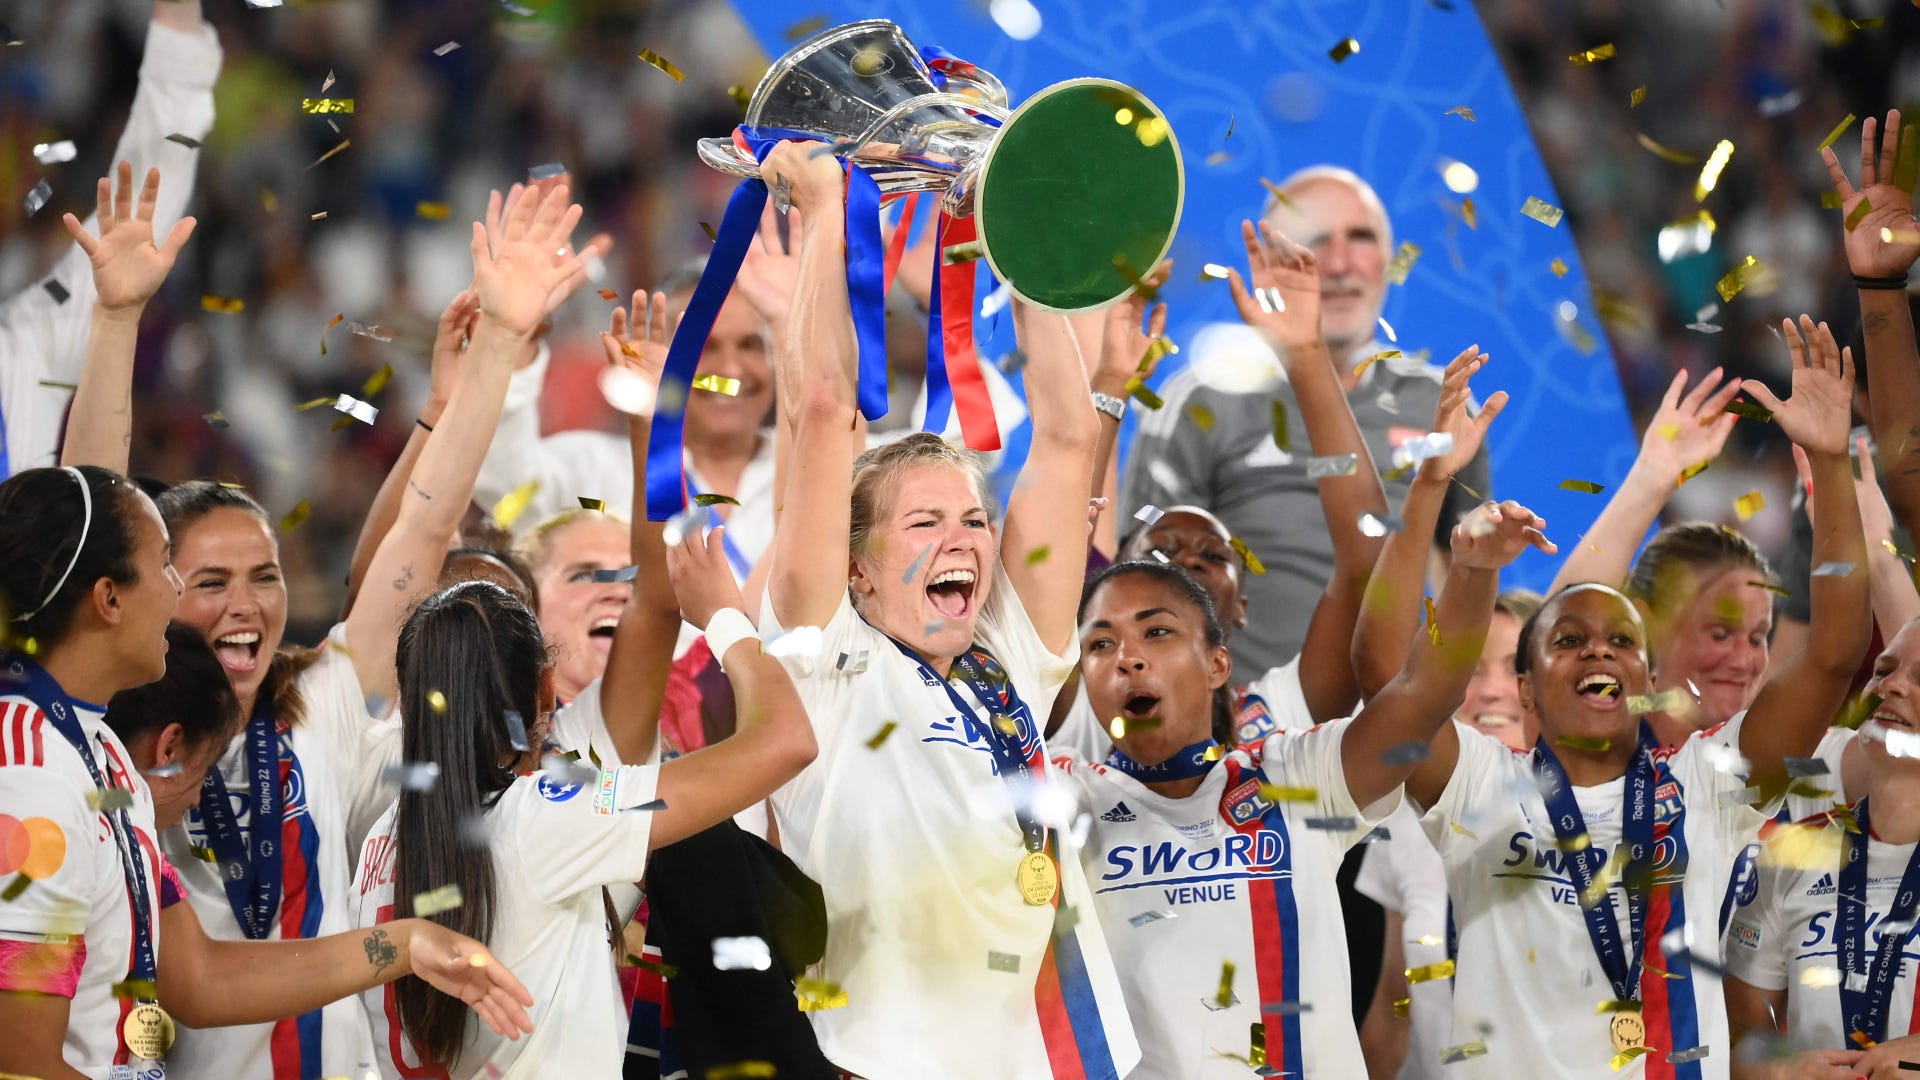 Champions League Feminina: Todos os campeões e artilharia